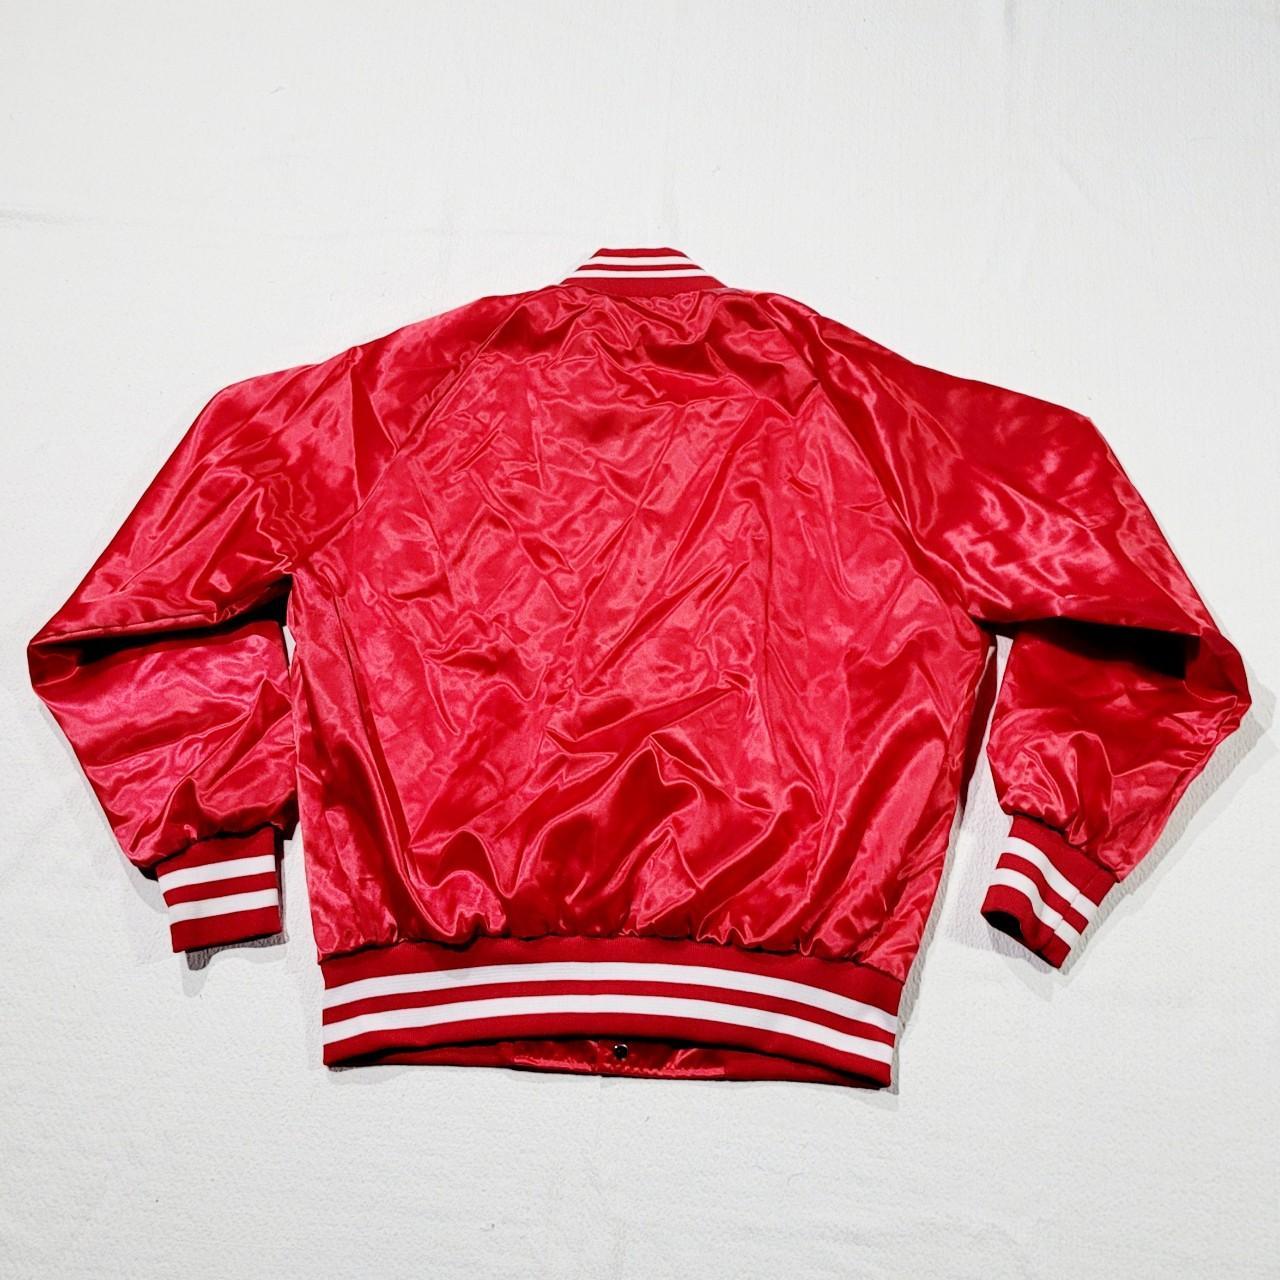 Vintage Bette & Court Red Patterned Bomber Jacket. - Depop